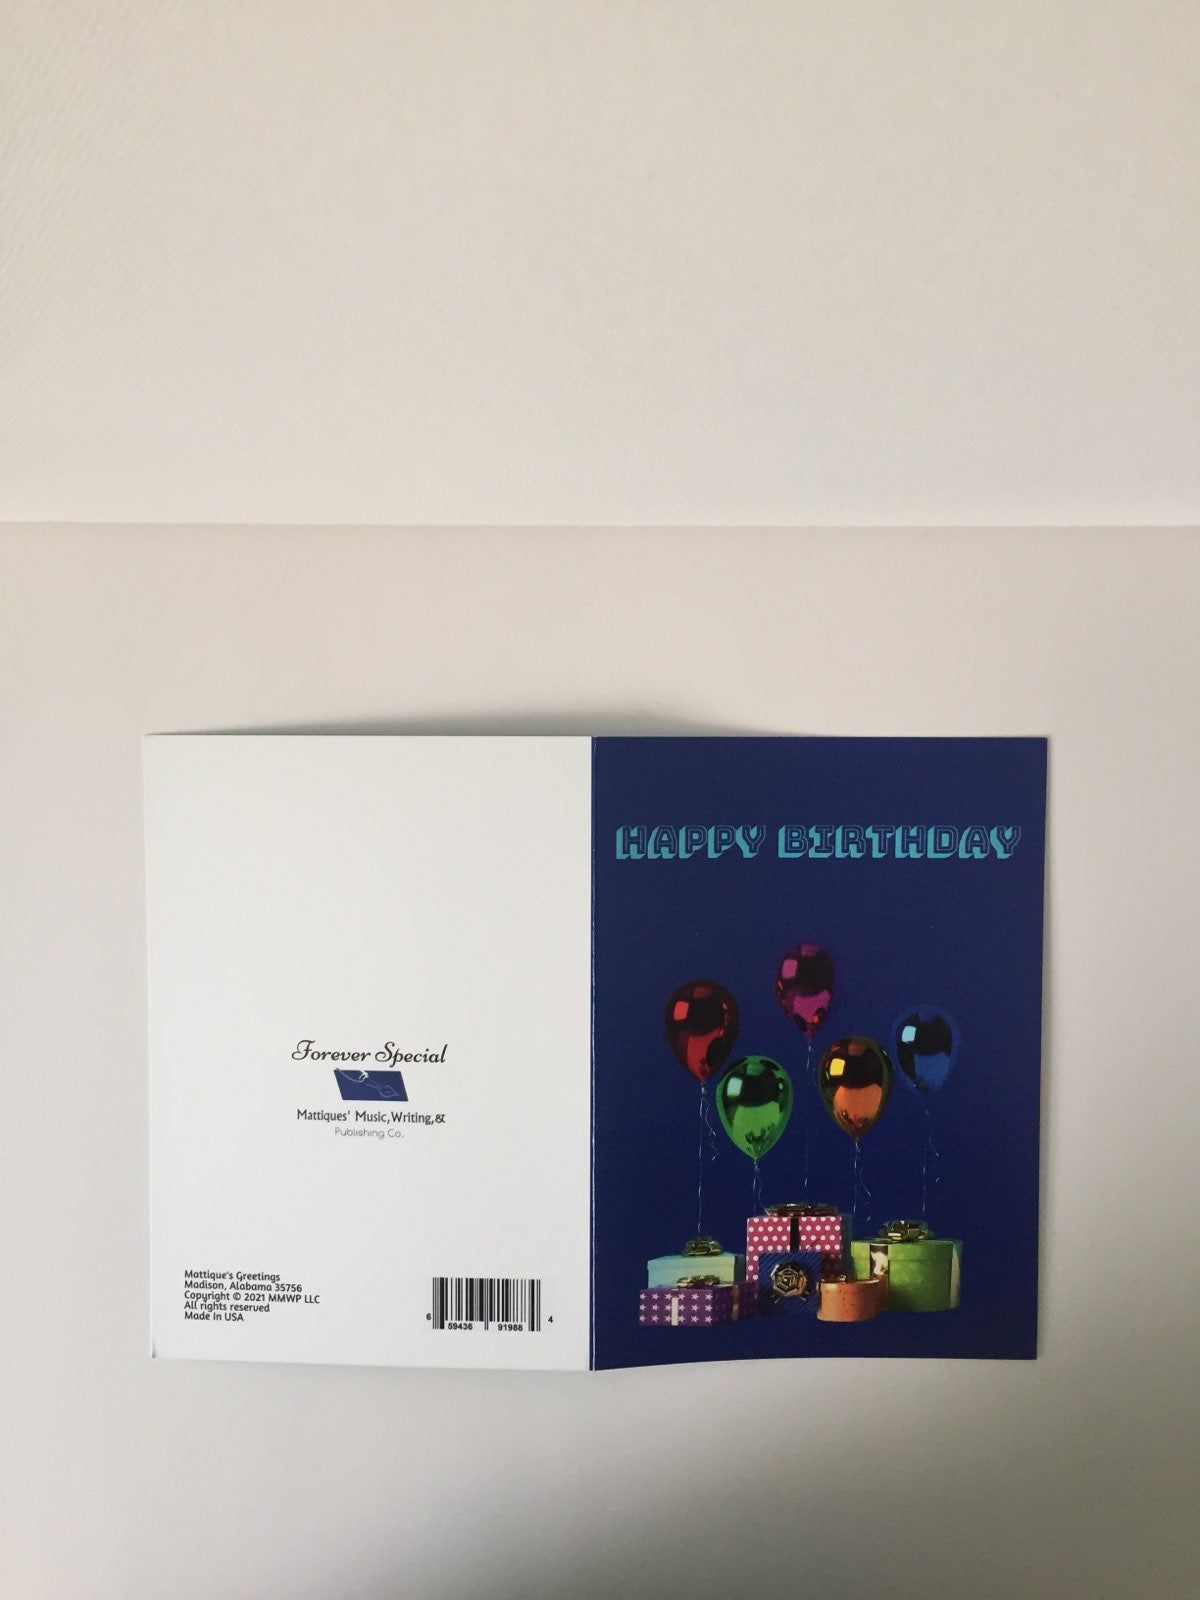 Happy Birthday Shiny Balloons 5x7 B-Day card.